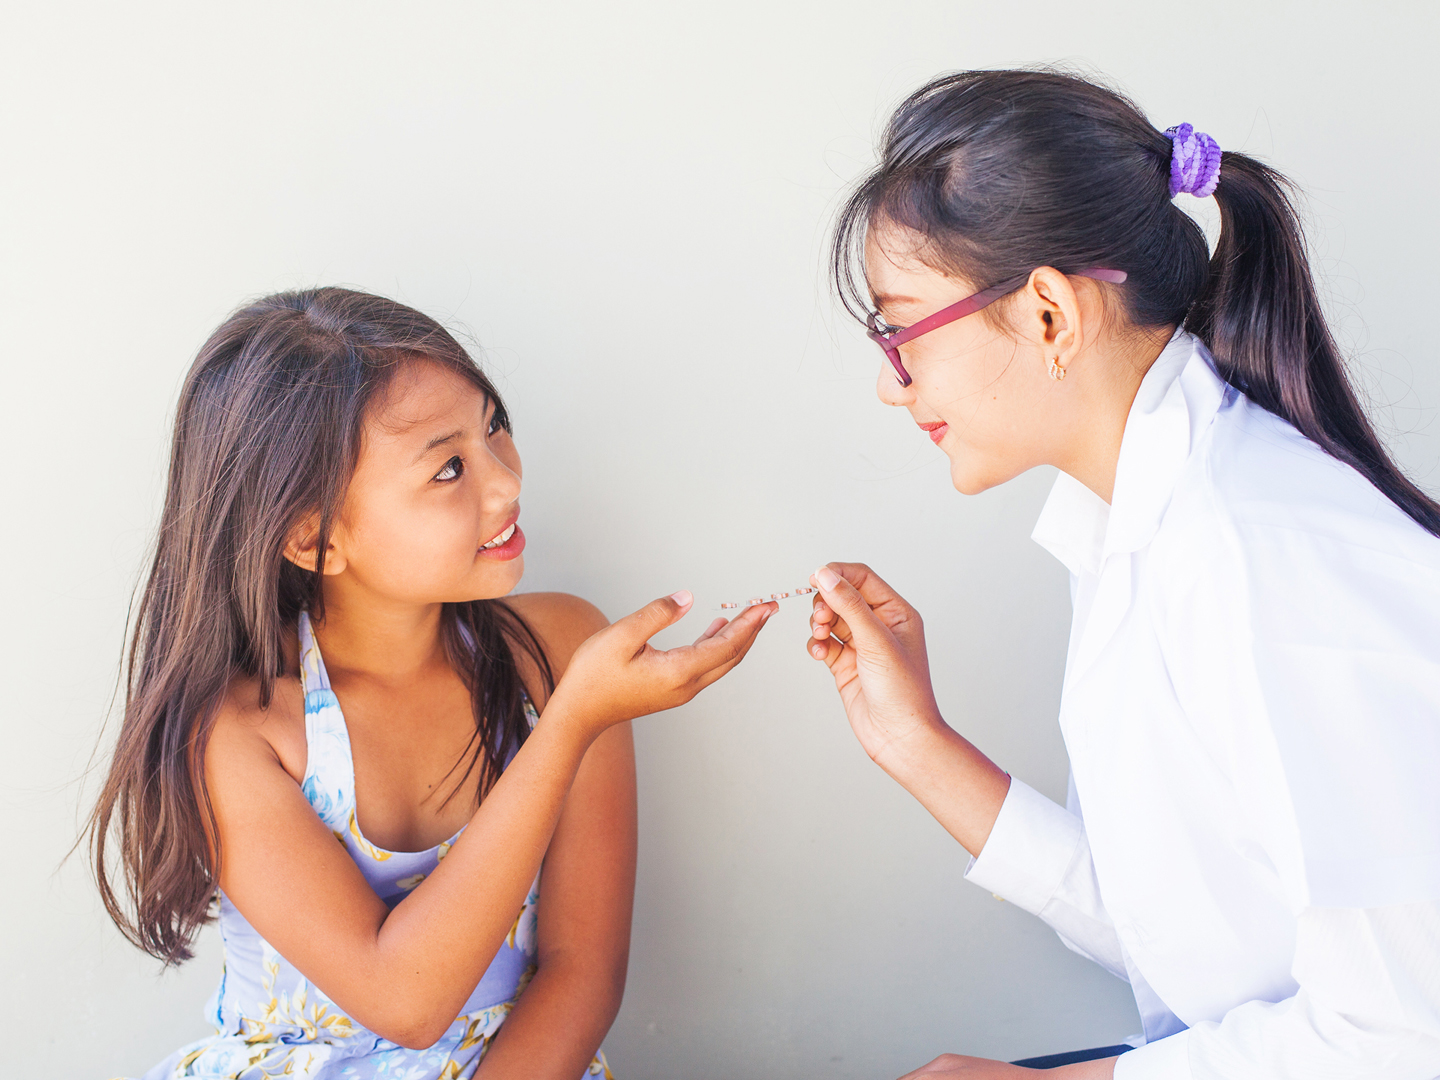 亚裔年轻医生给亚裔小女孩吃药